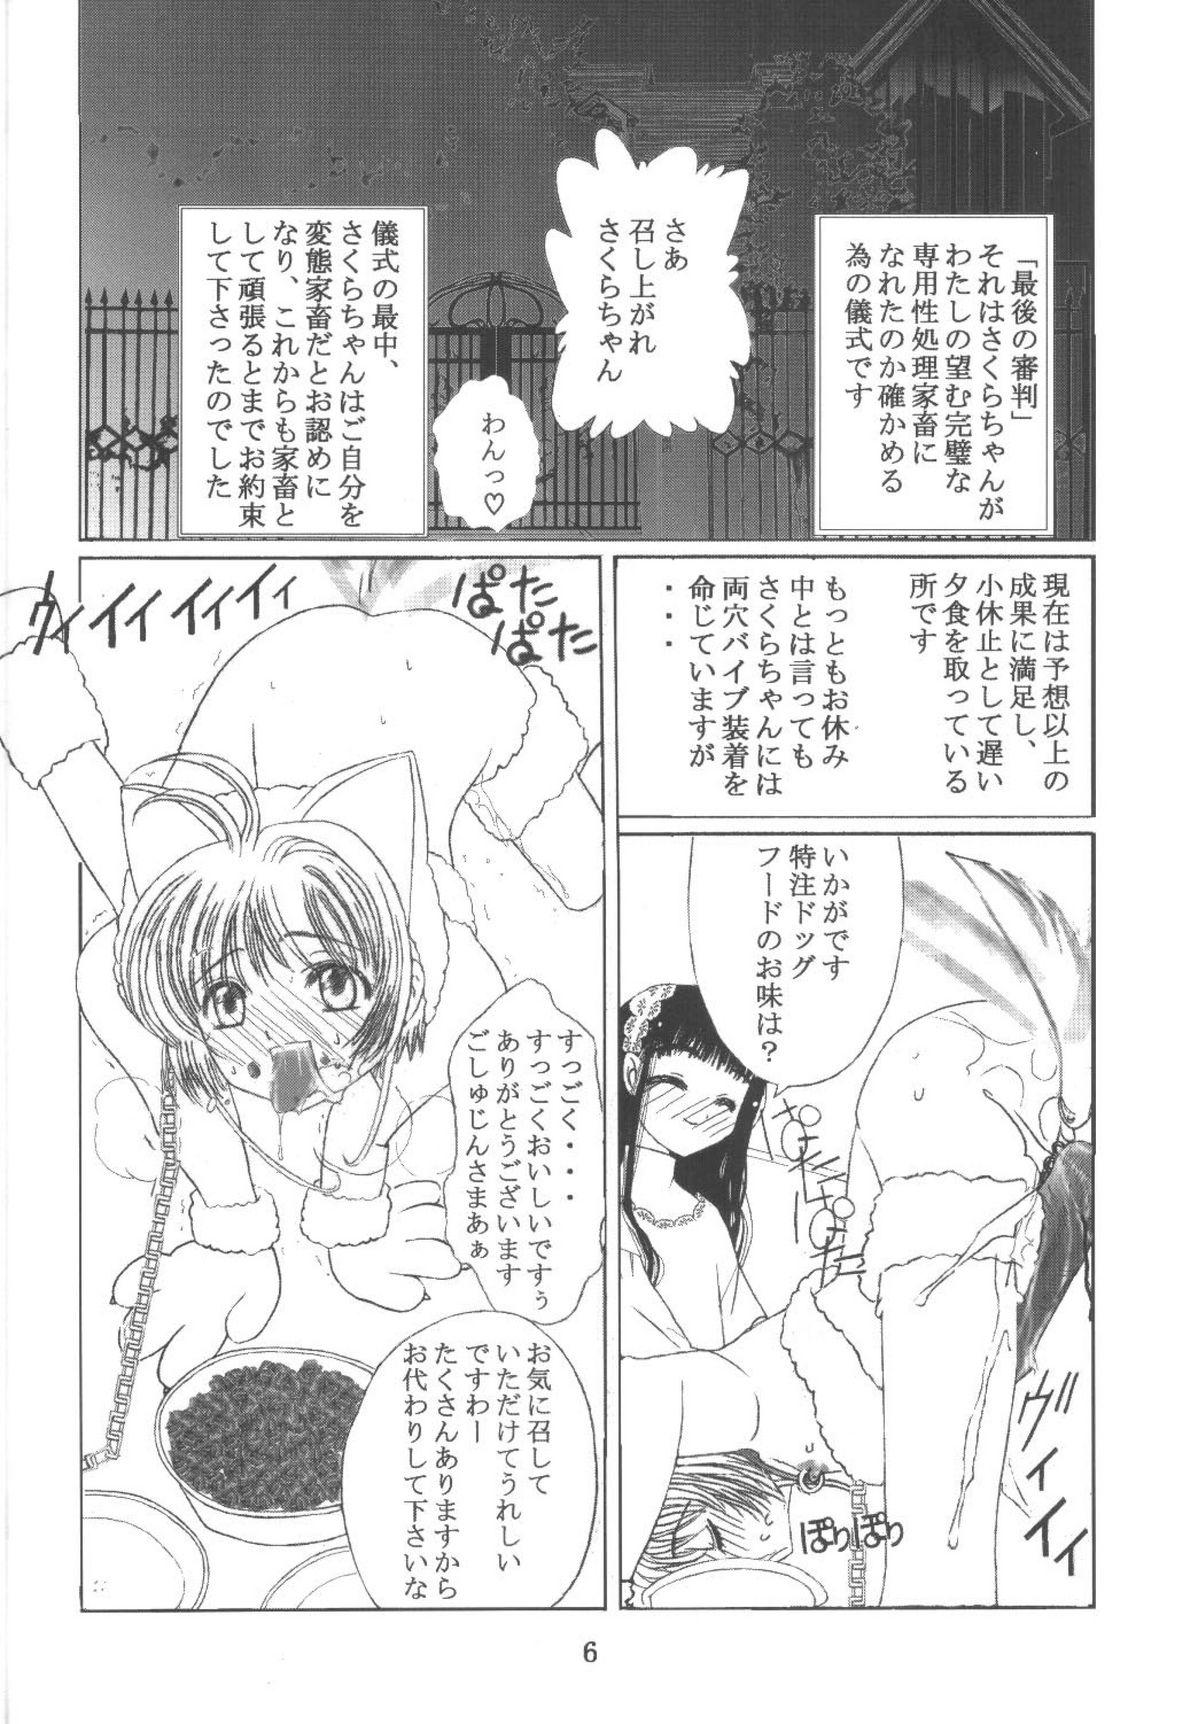 Novinho Kuuronziyou 11 Sakura-chan de Asobou 6 - Cardcaptor sakura Para - Page 6